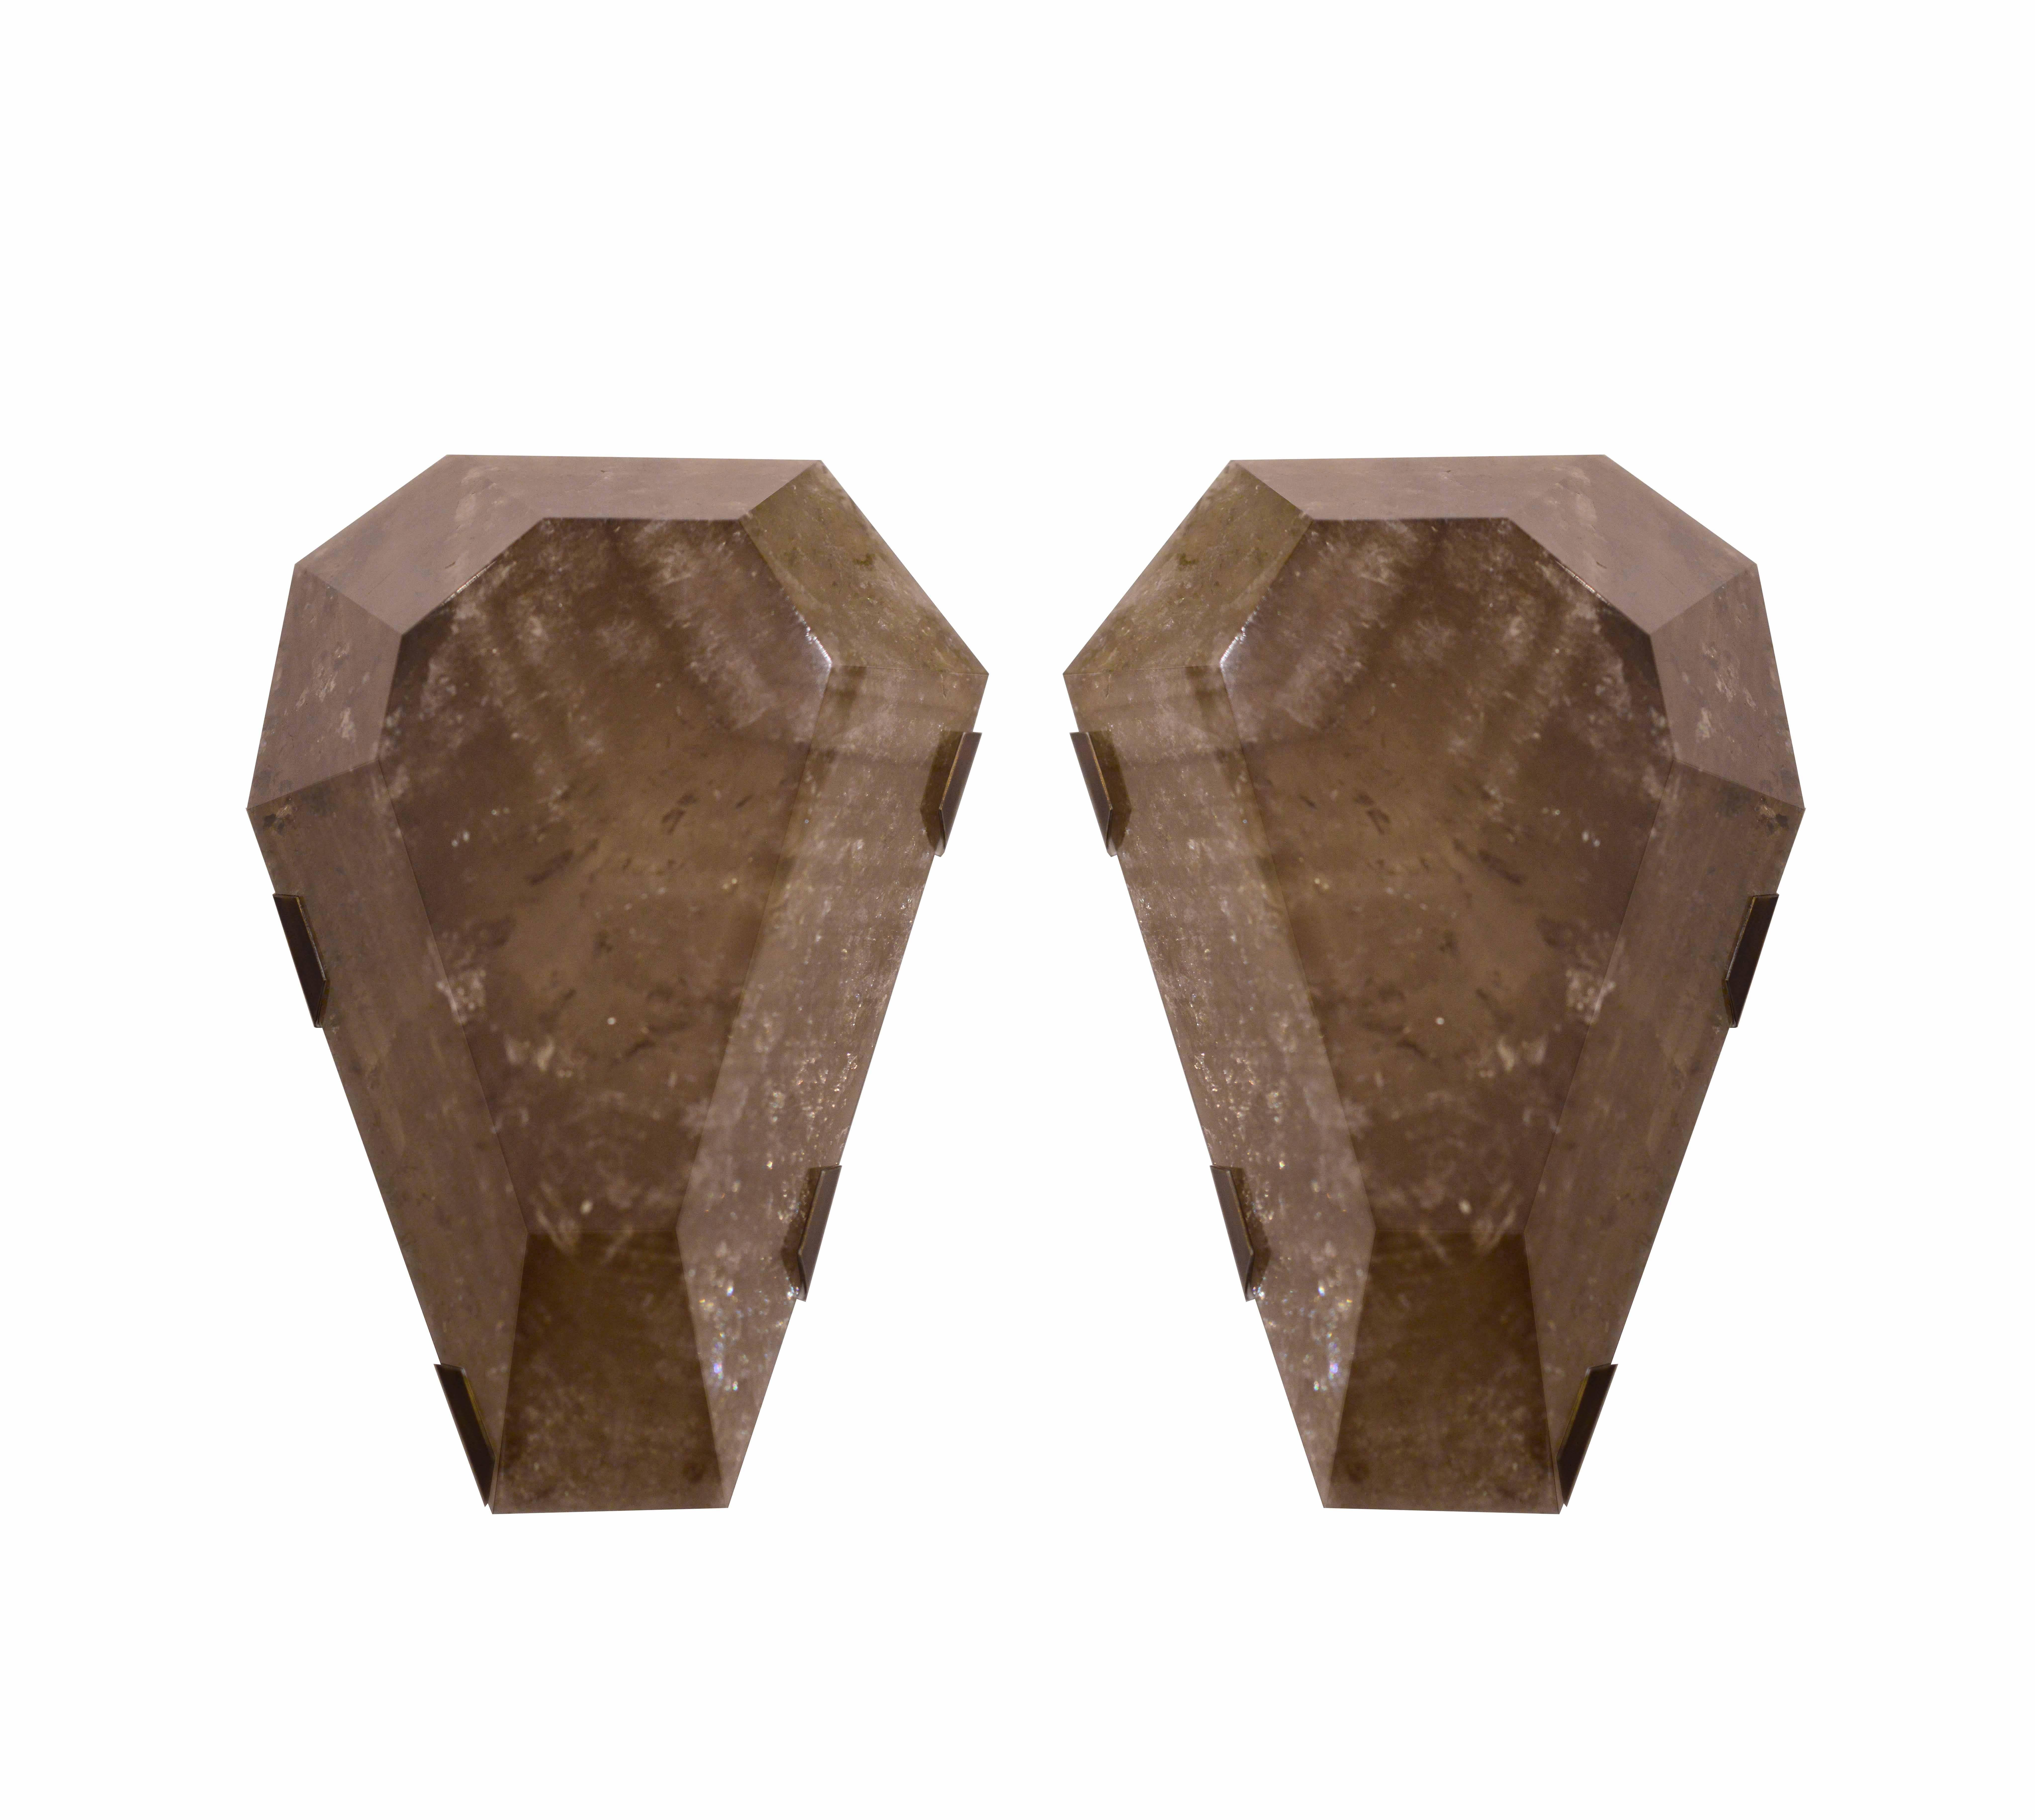 Ein Paar fein geschnitzte rauchbraune Bergkristall-Leuchter in Diamantform mit antiker Messingfassung, geschaffen von Phoenix Gallery, NYC.
Jeder Wandleuchter hat zwei Fassungen mit Glühbirnen von maximal 120 W.
Kundenspezifische Abmessungen und